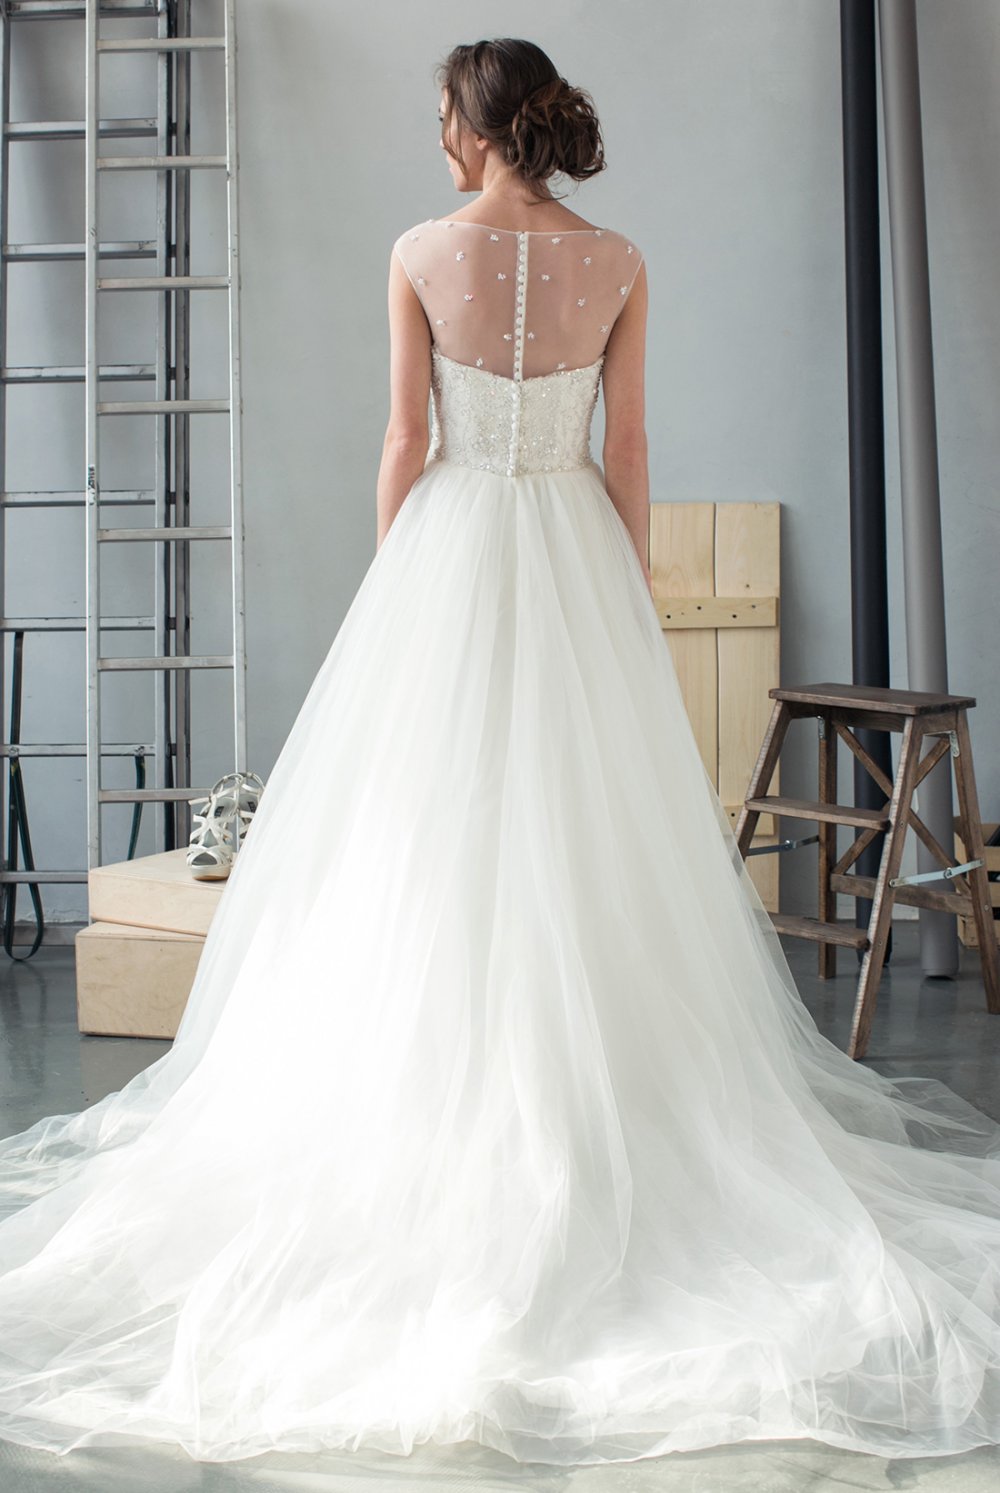 Пышное свадебное платье с красивой прозрачной спинкой